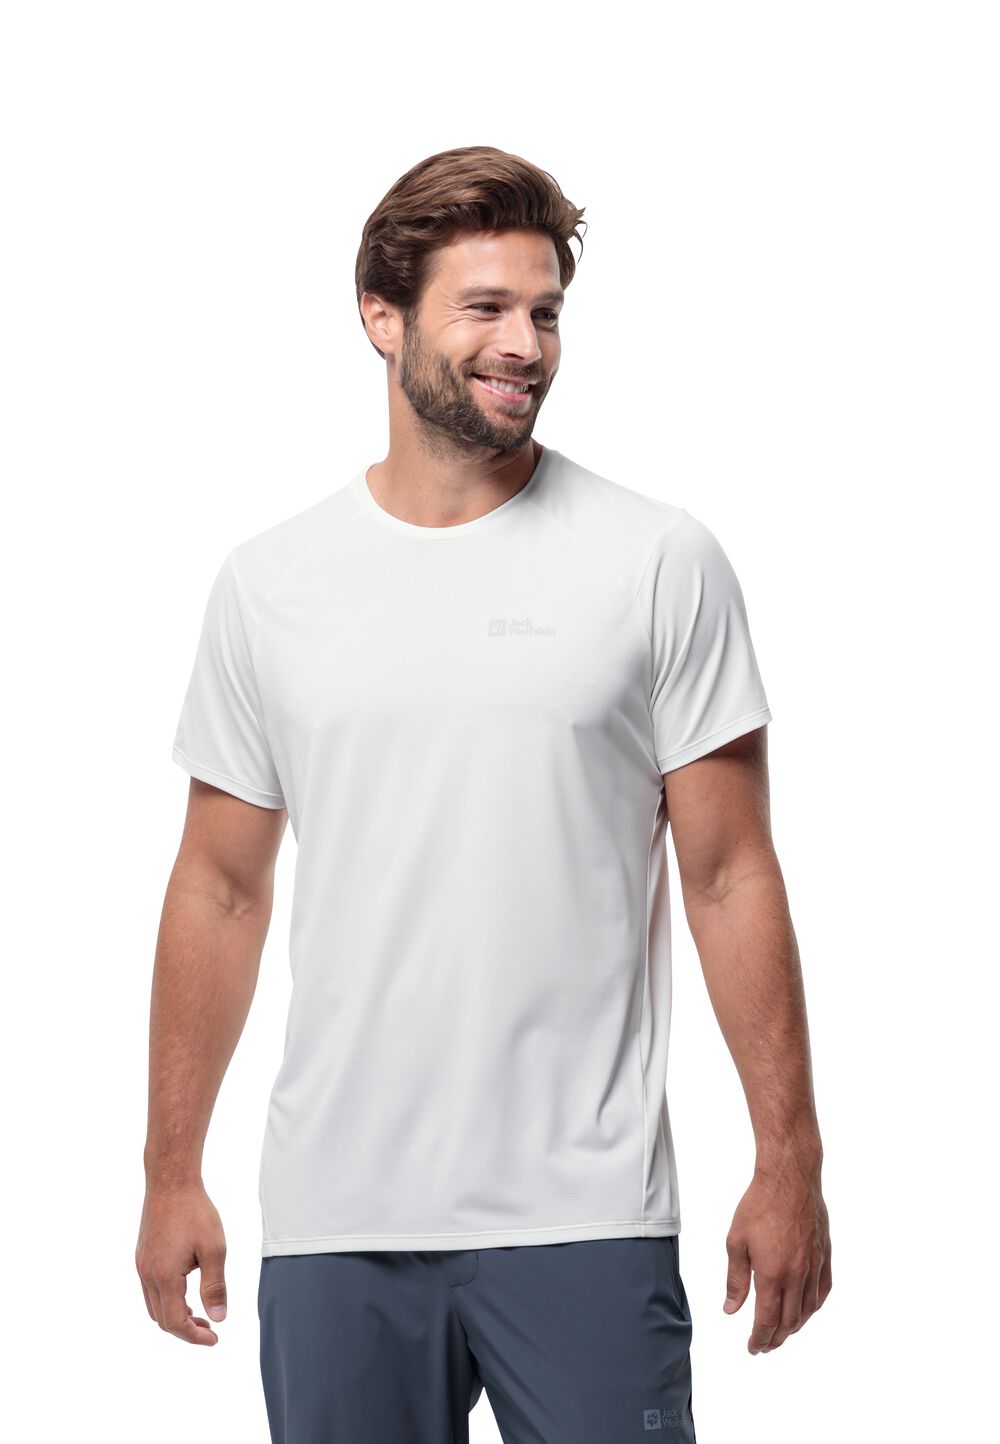 Jack Wolfskin Prelight Trail T-Shirt Men Functioneel shirt Heren XXL wit stark white